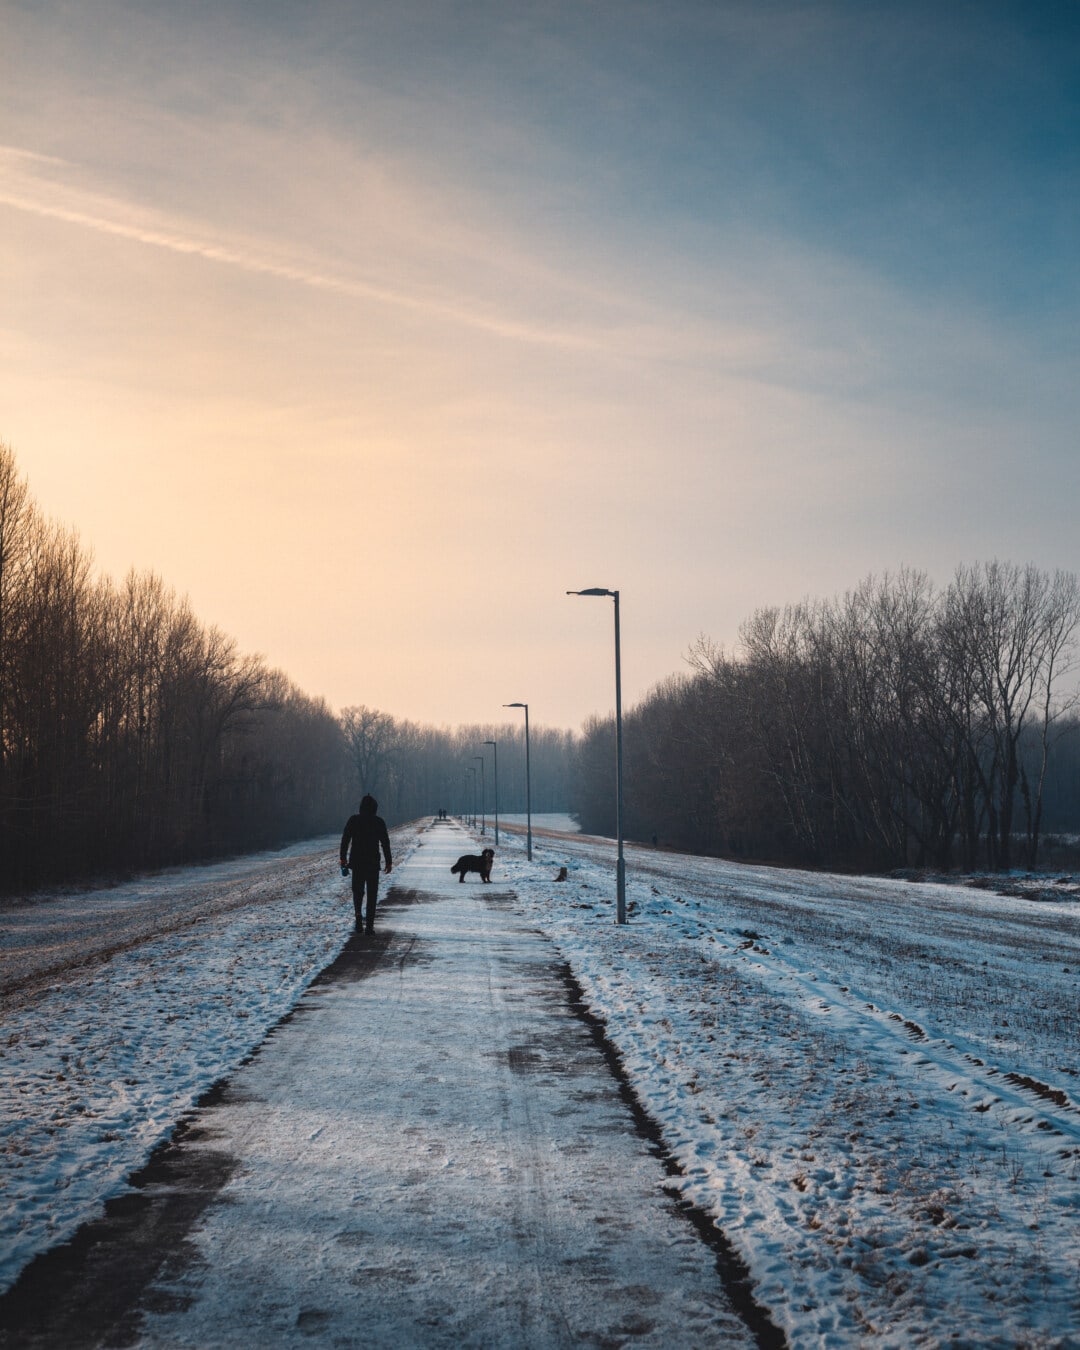 caminhando, pessoa, nevado, estrada, crepúsculo, frio, paisagem, Inverno, amanhecer, neve